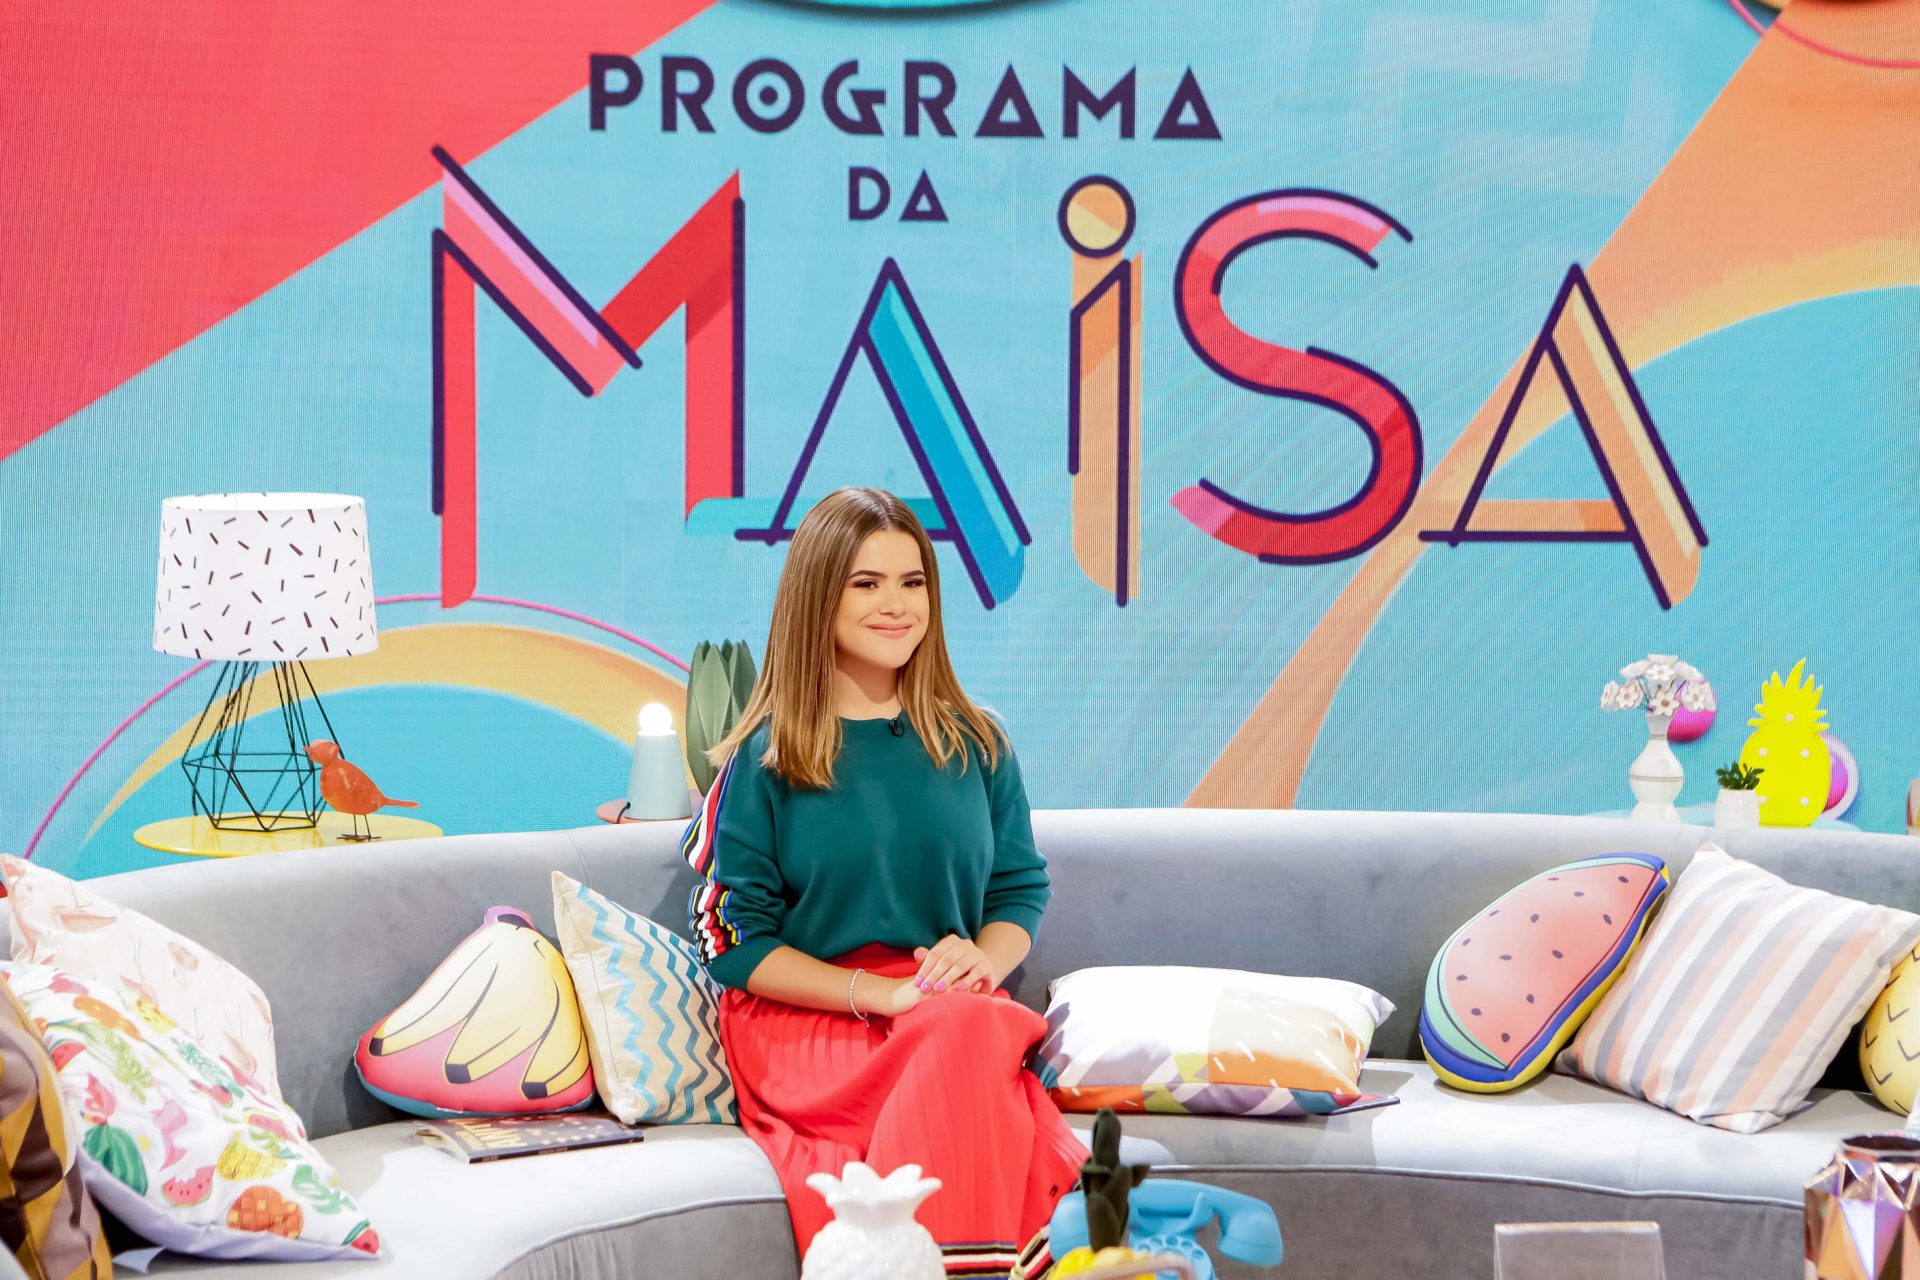 Maisa Silva